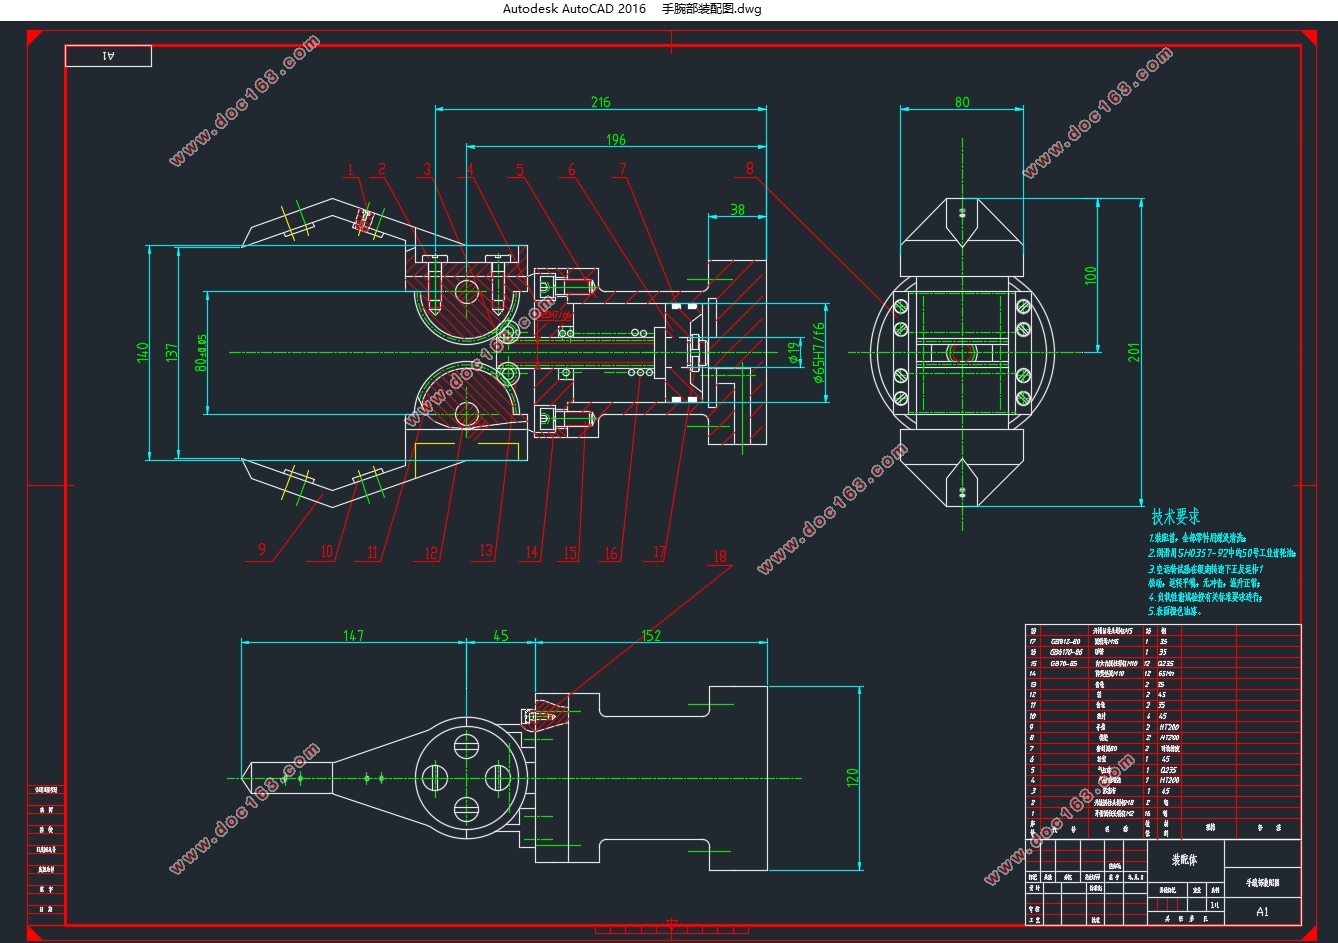 基于PLC三自由度机械手控制系统的设计(10kg负载)(含CAD零件图装配图)